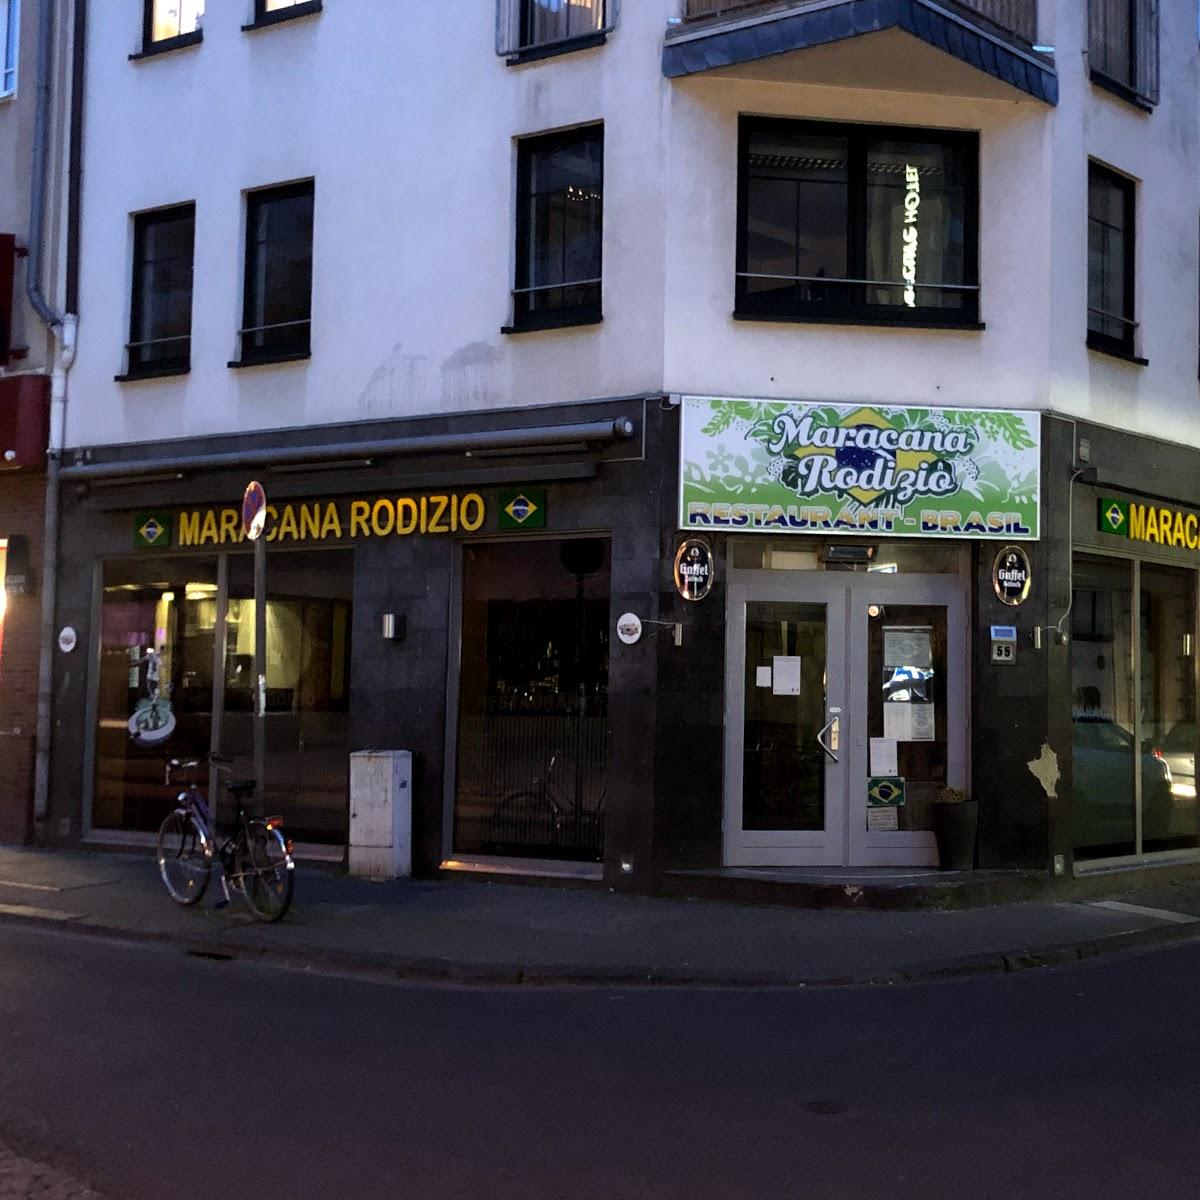 Restaurant "Restaurant Maracana Rodizio" in Köln